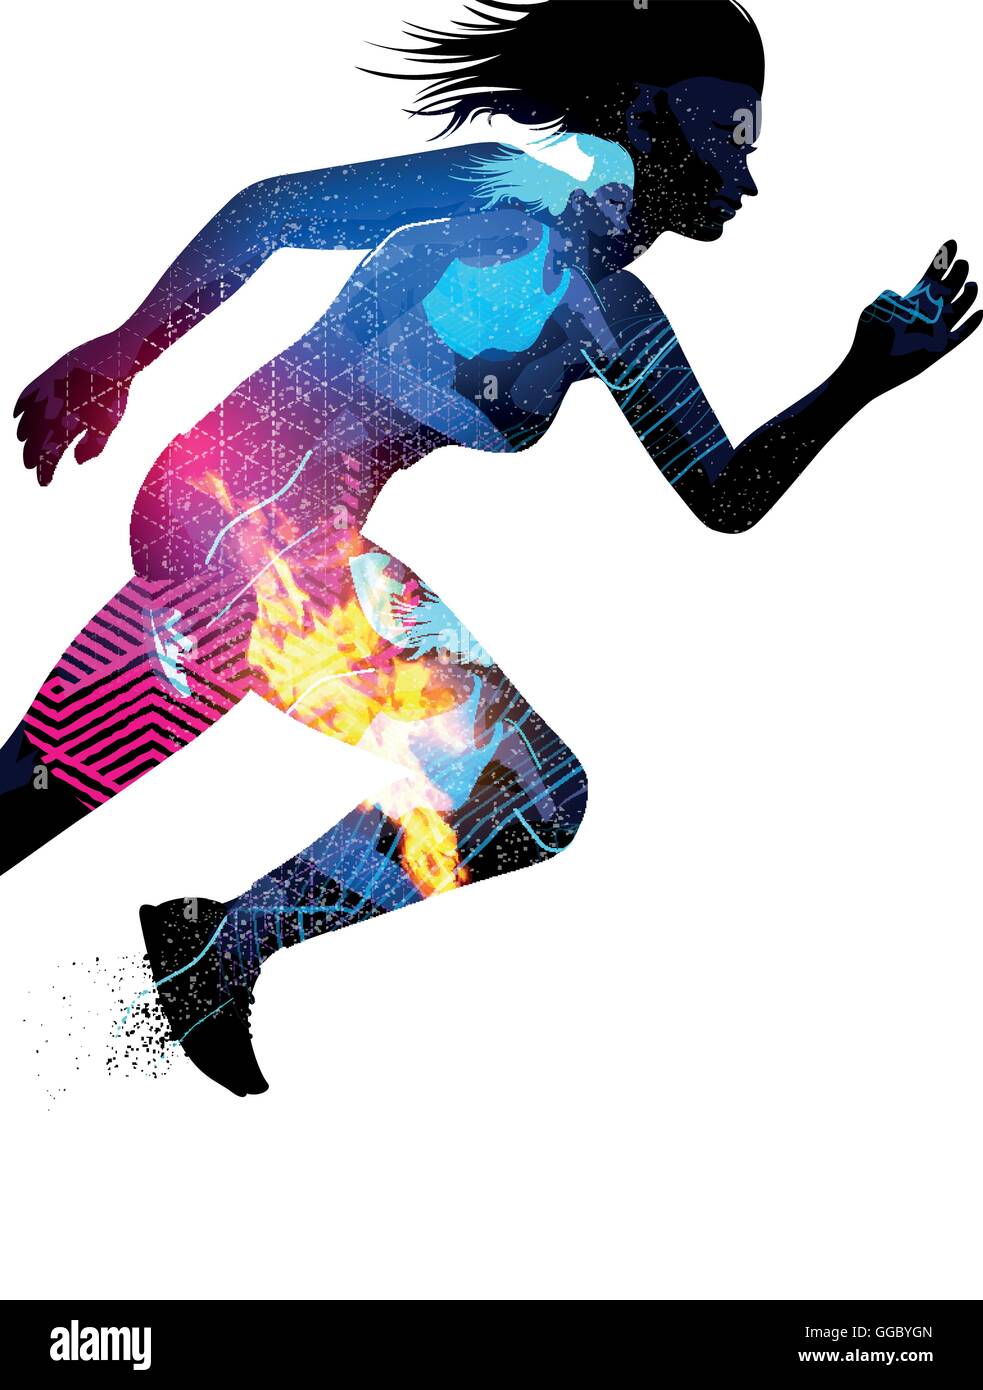 Doppelte Belichtung Effekt Vektor-Illustration eines laufenden Sport Frau mit Textur-Effekte. Stock Vektor